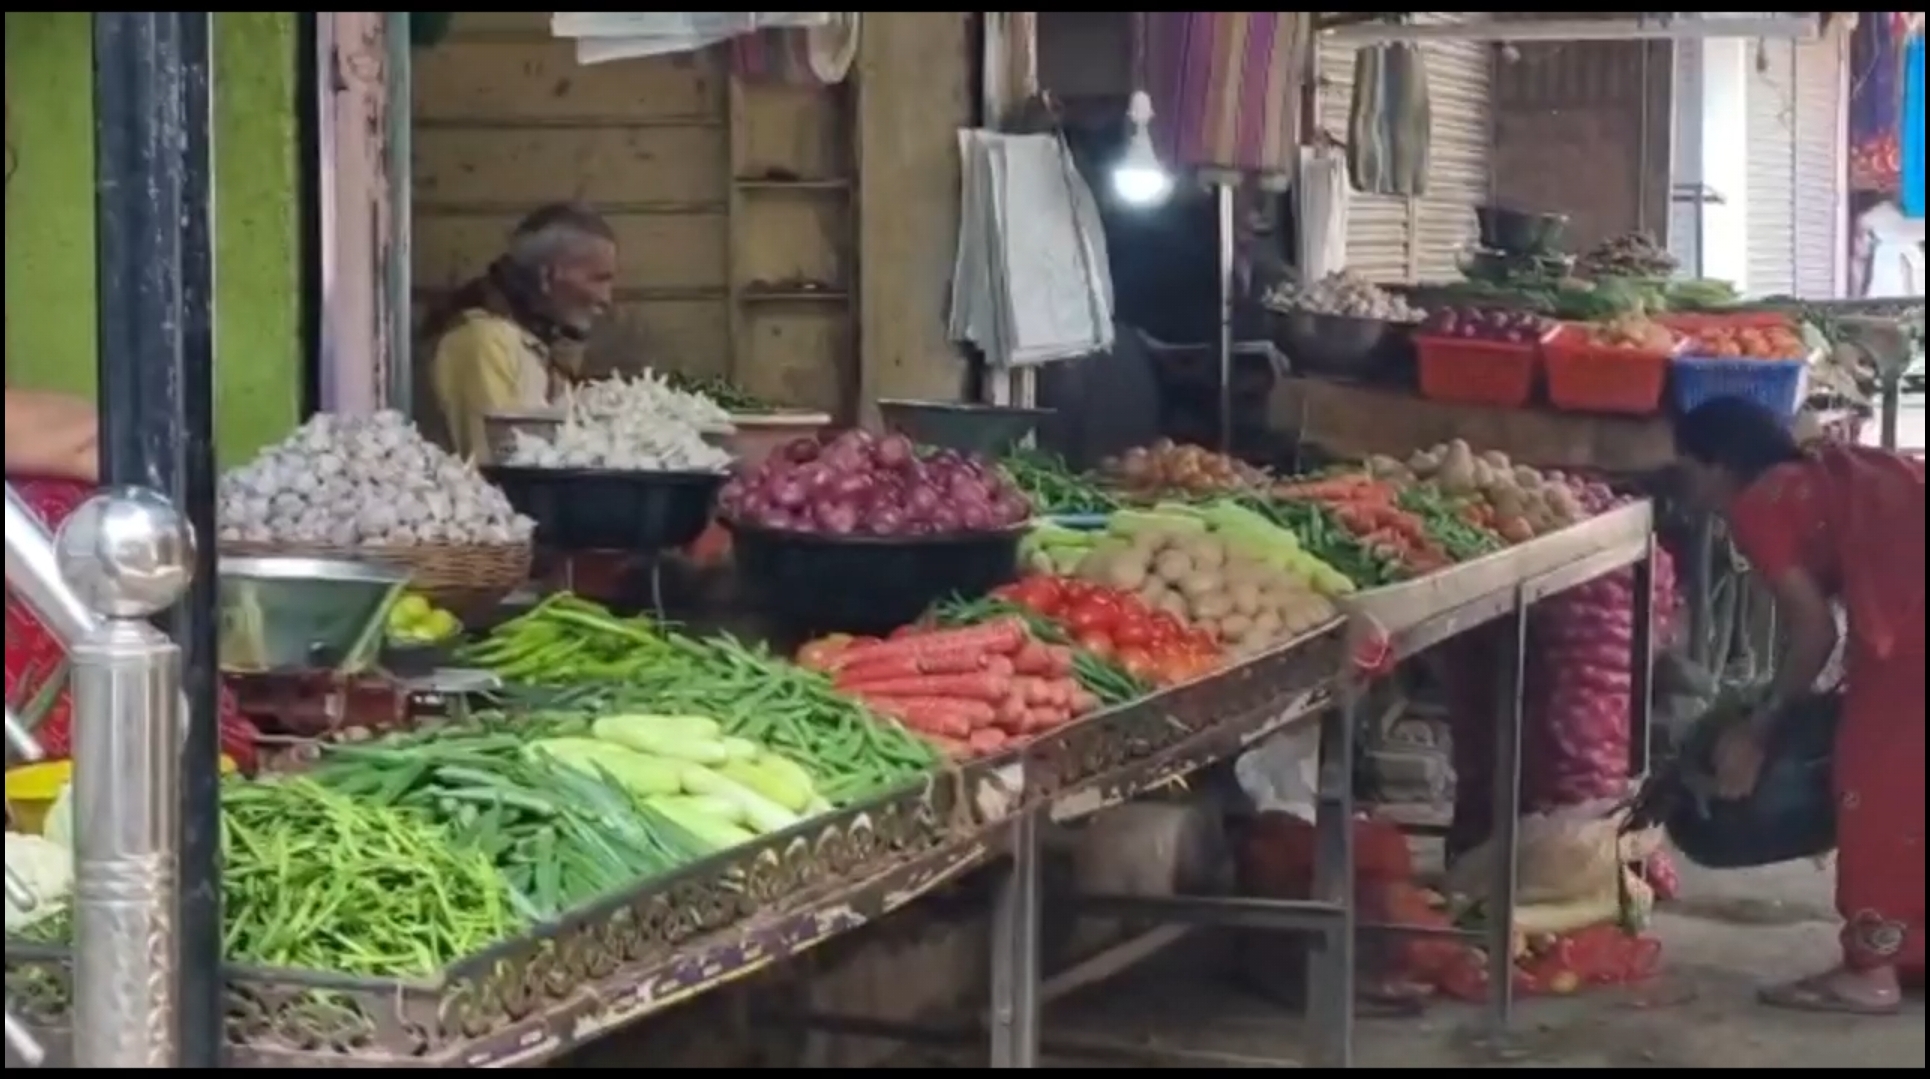 اورنگ آباد میں سبزی کی قیمتوں میں مزید اضافہ